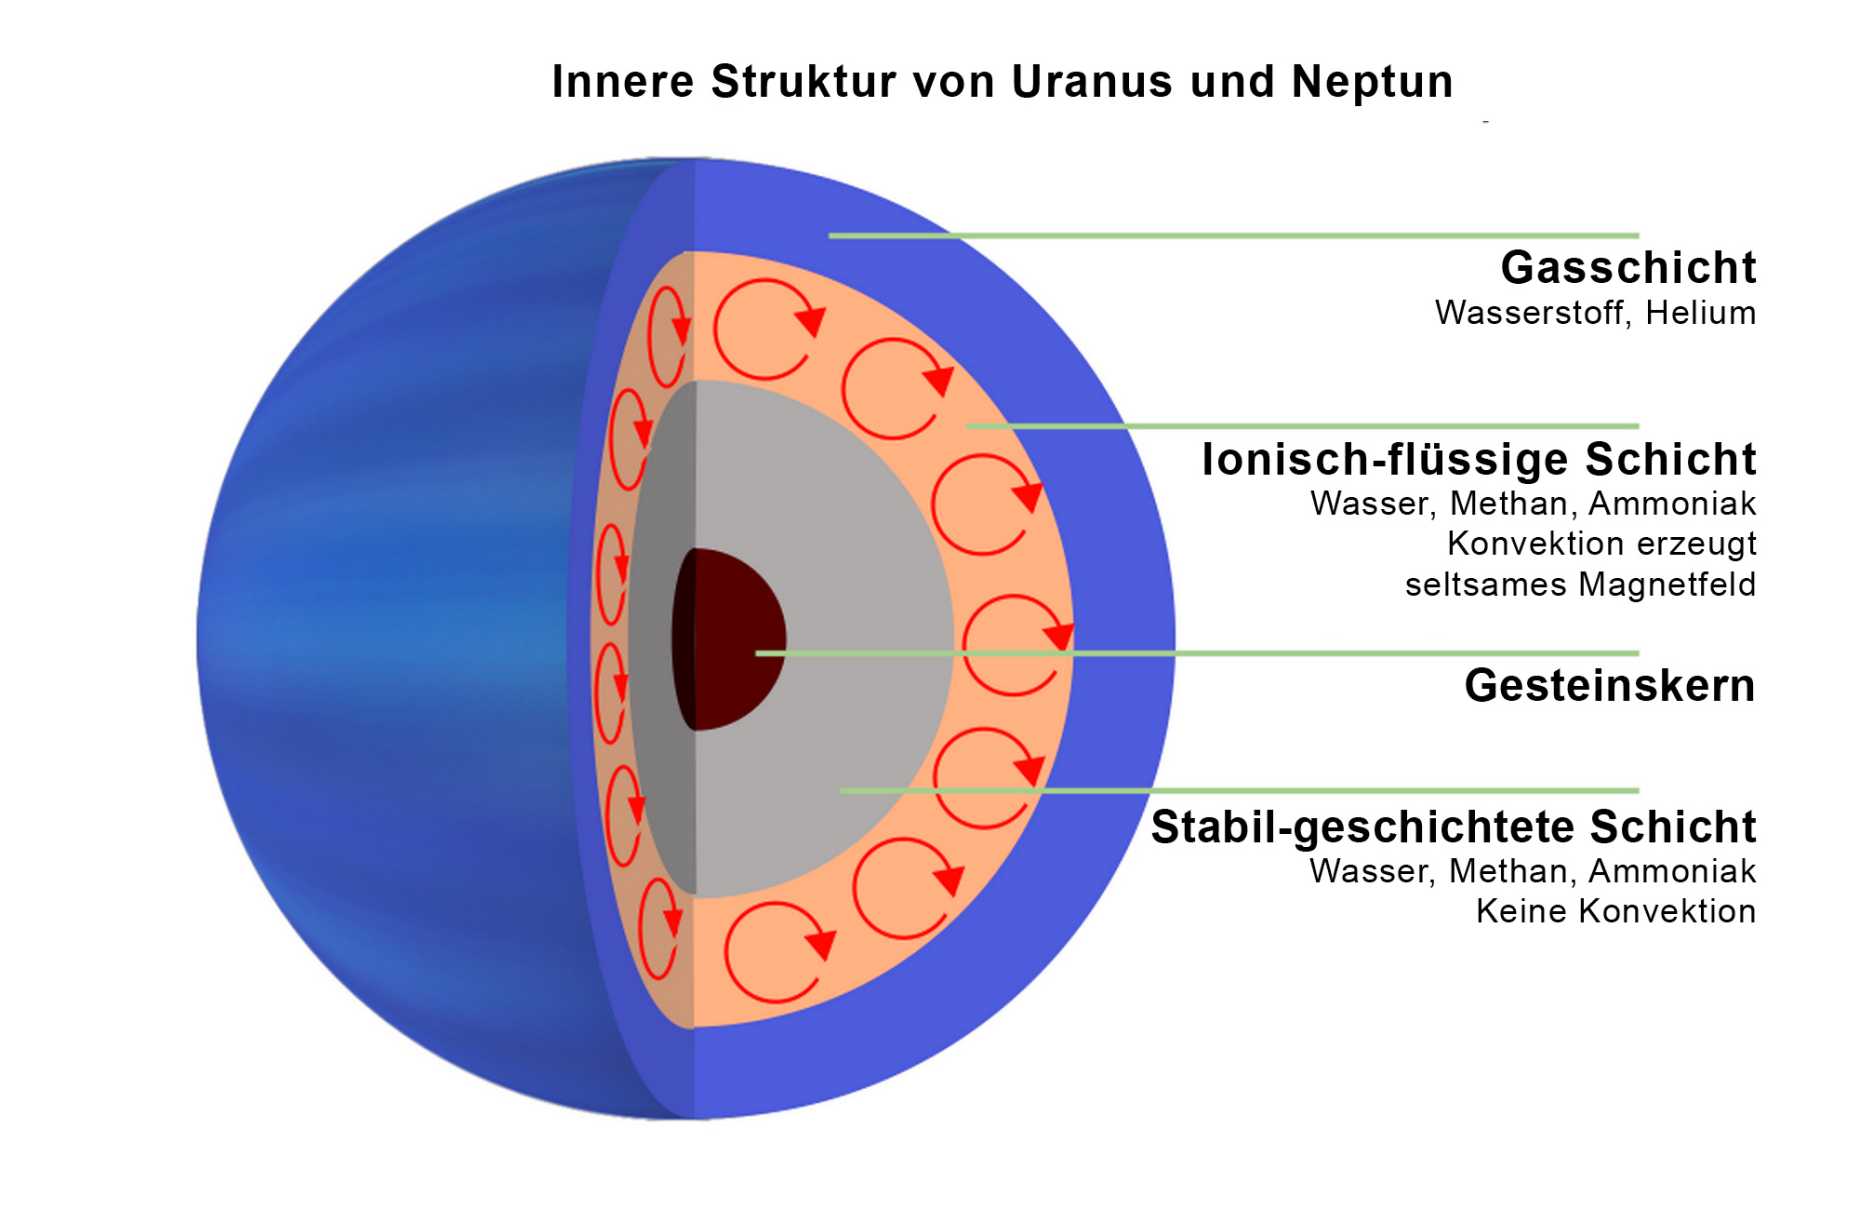 Innere Struktur von Uranus und Neptun